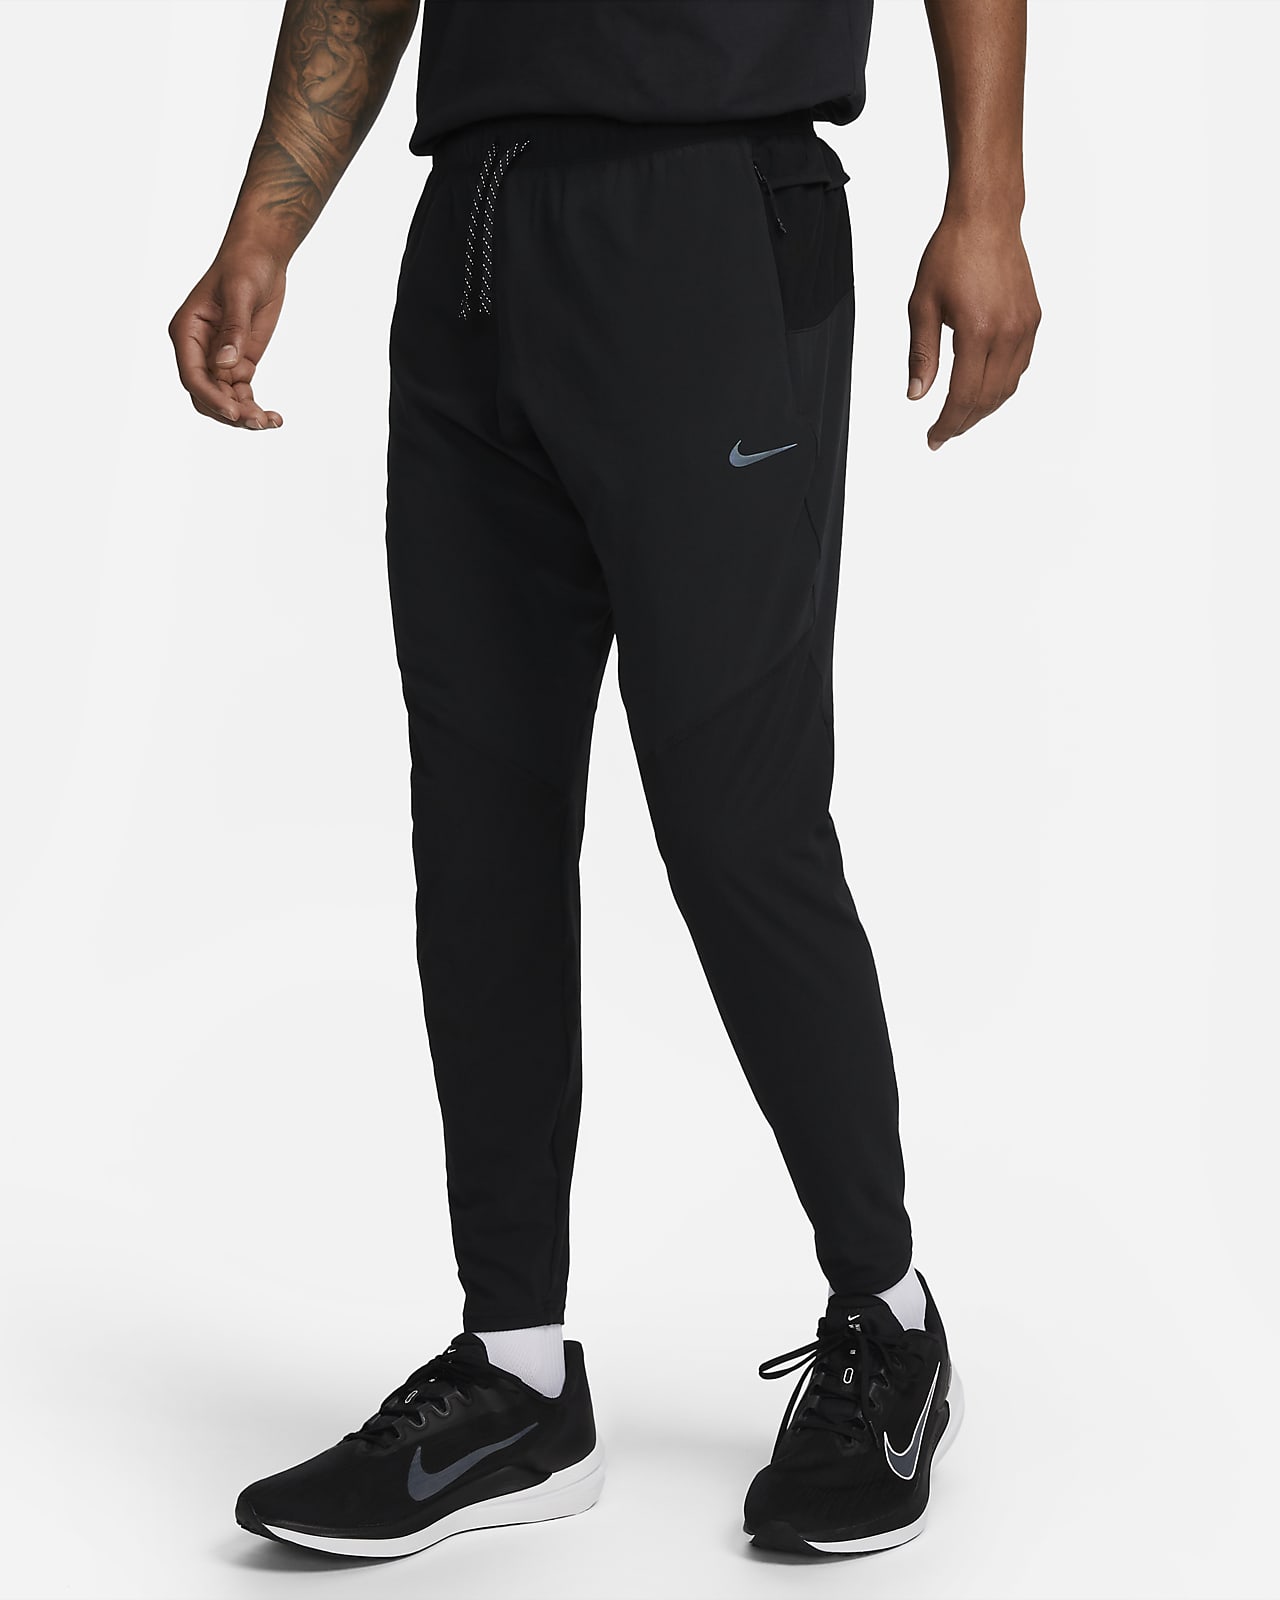 Ανδρικό παντελόνι για τρέξιμο με στενή εφαρμογή Nike Dri-FIT Running Division Phenom